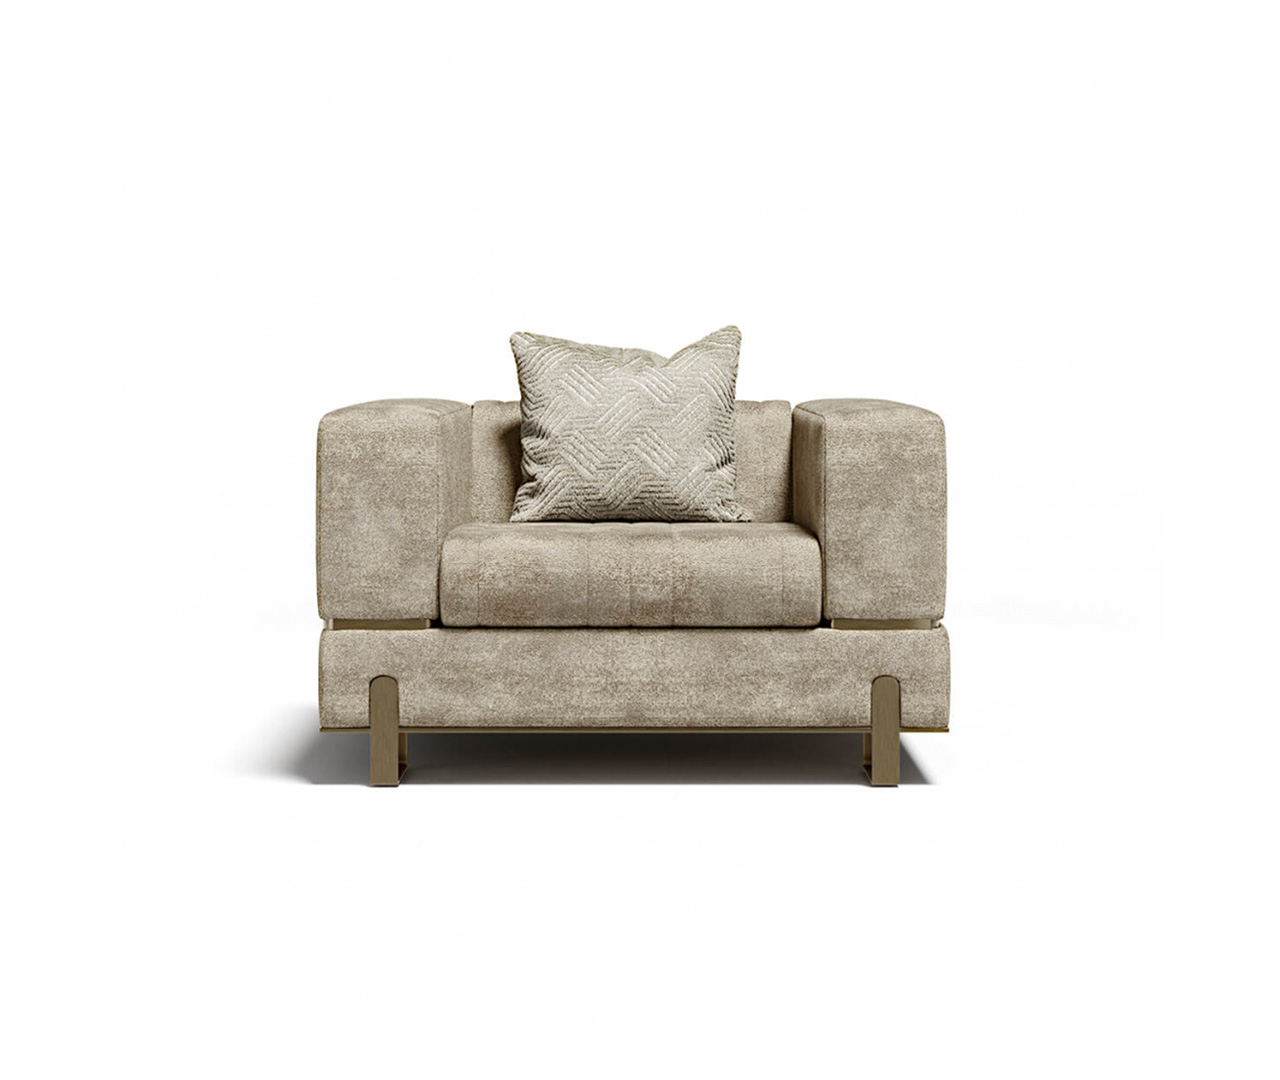 Modern Upholstered Armchair